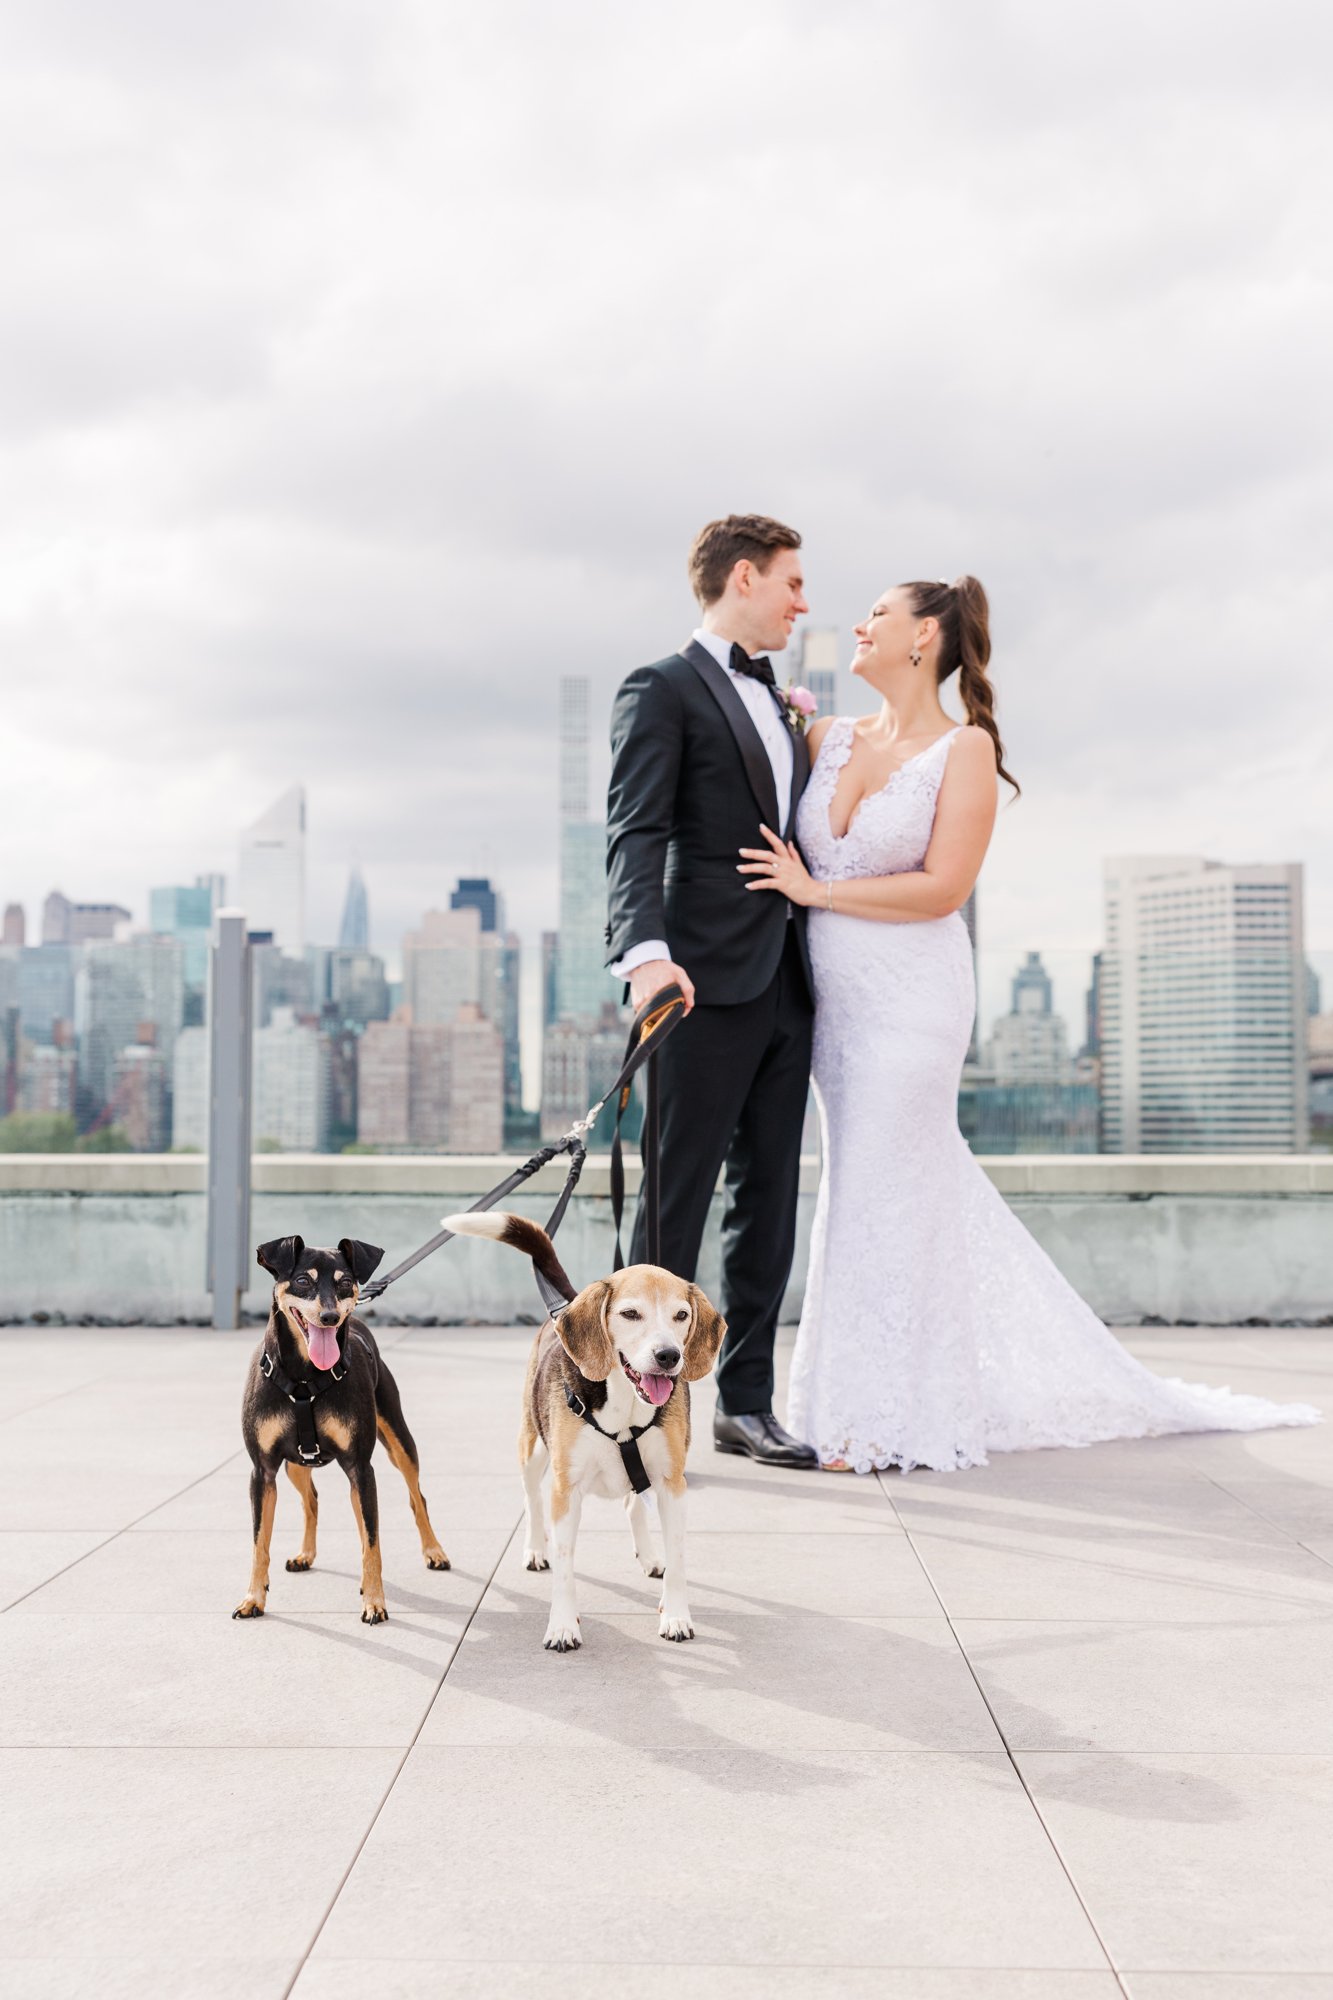 Adorable Bordone Wedding Photos in LIC along the New York City Skyline